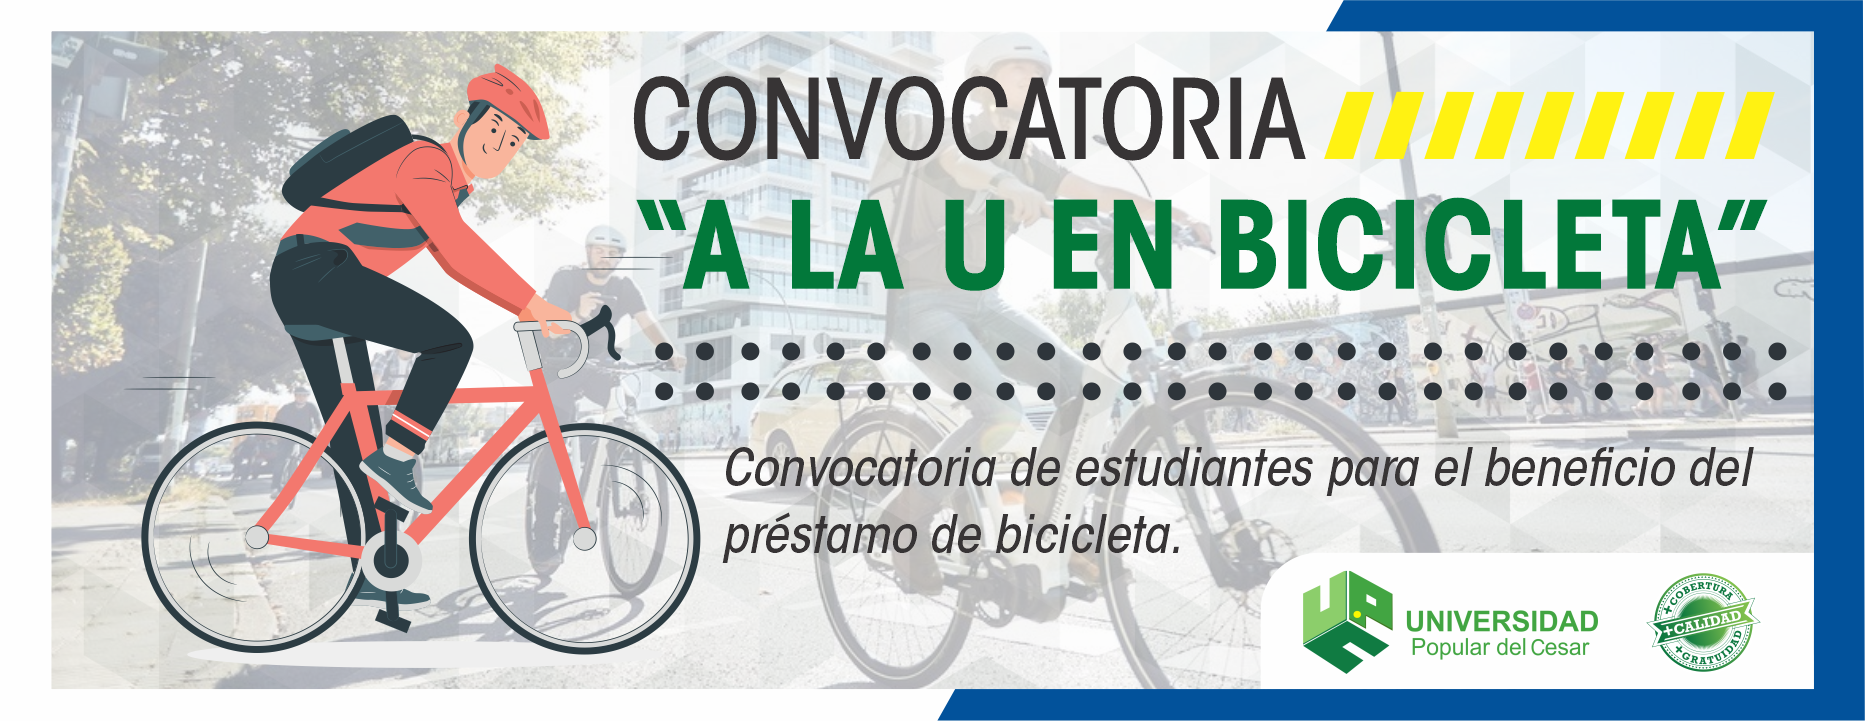 Banner Convocatoria “a la U en bicicleta”